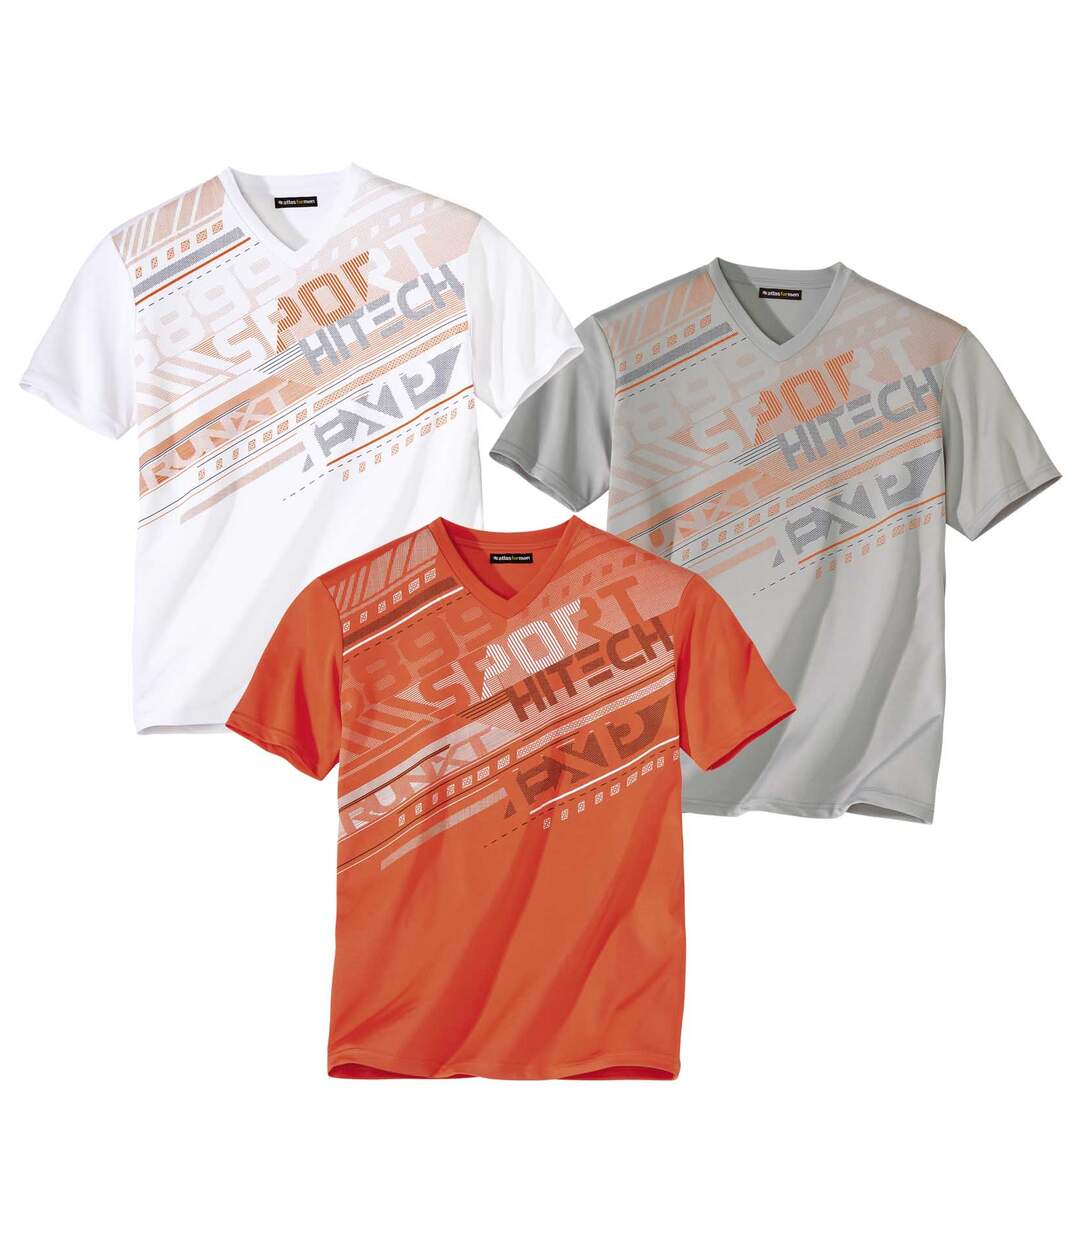 Pack of 3 Men's Sporty T-Shirts - Gray White Orange Atlas For Men